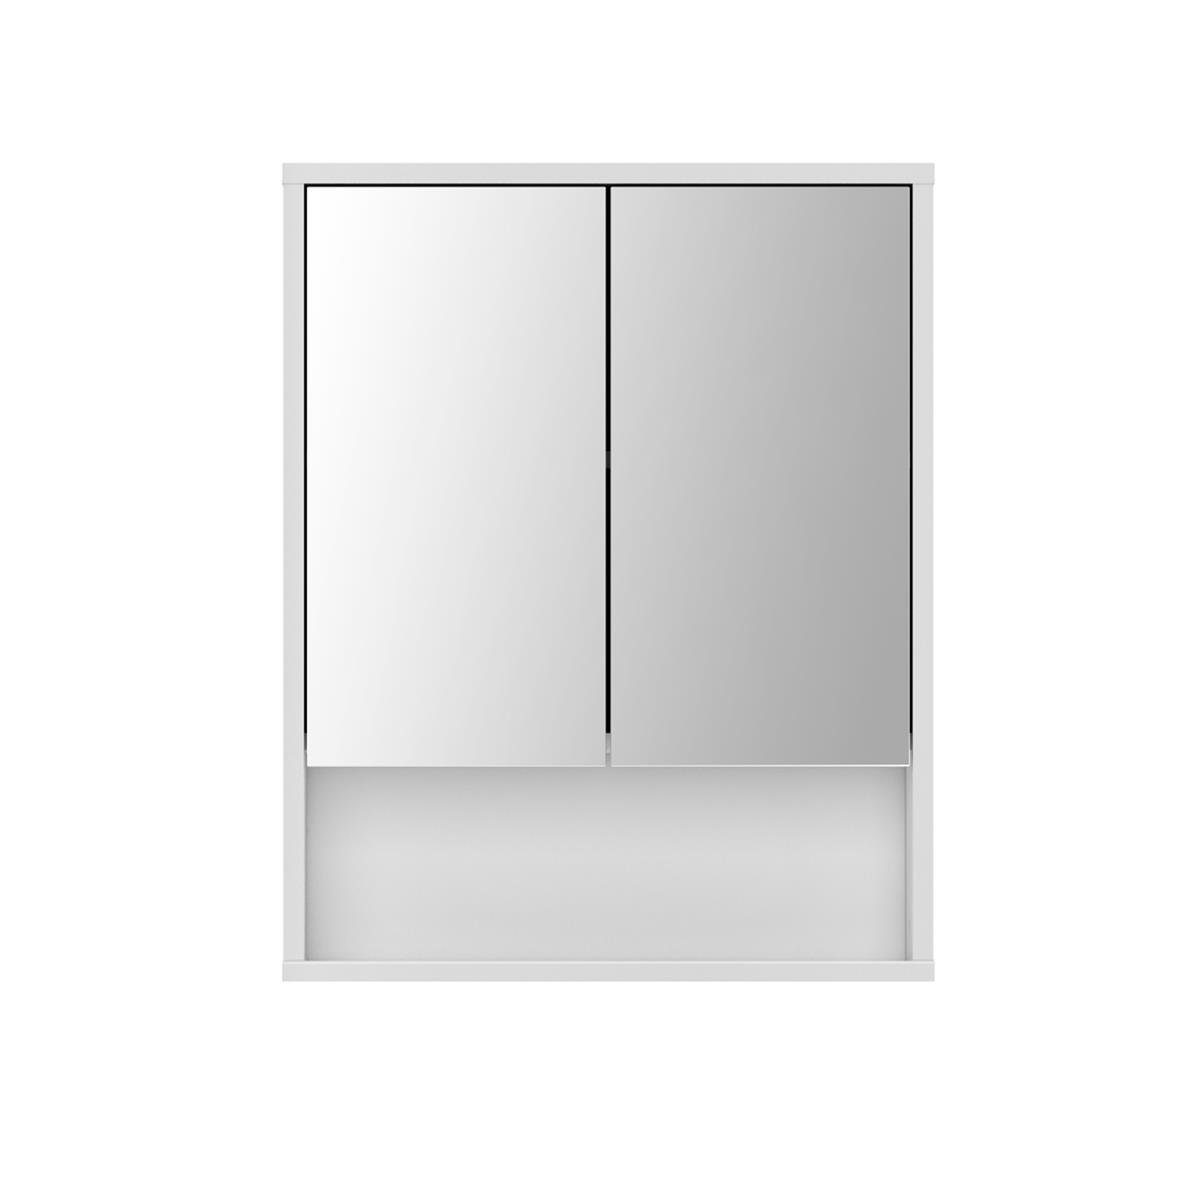 möbelando Spiegelschrank Sunset Moderner Spiegelschrank, Front aus Spiegelglas, Korpus aus melaminharzbeschichteter Spanplatte in Weiß, 2 Türen, 1 Einlegeboden und 1 offenes Fach, Breite: 57 cm Höhe: 71,6 cm Tiefe: 16 cm